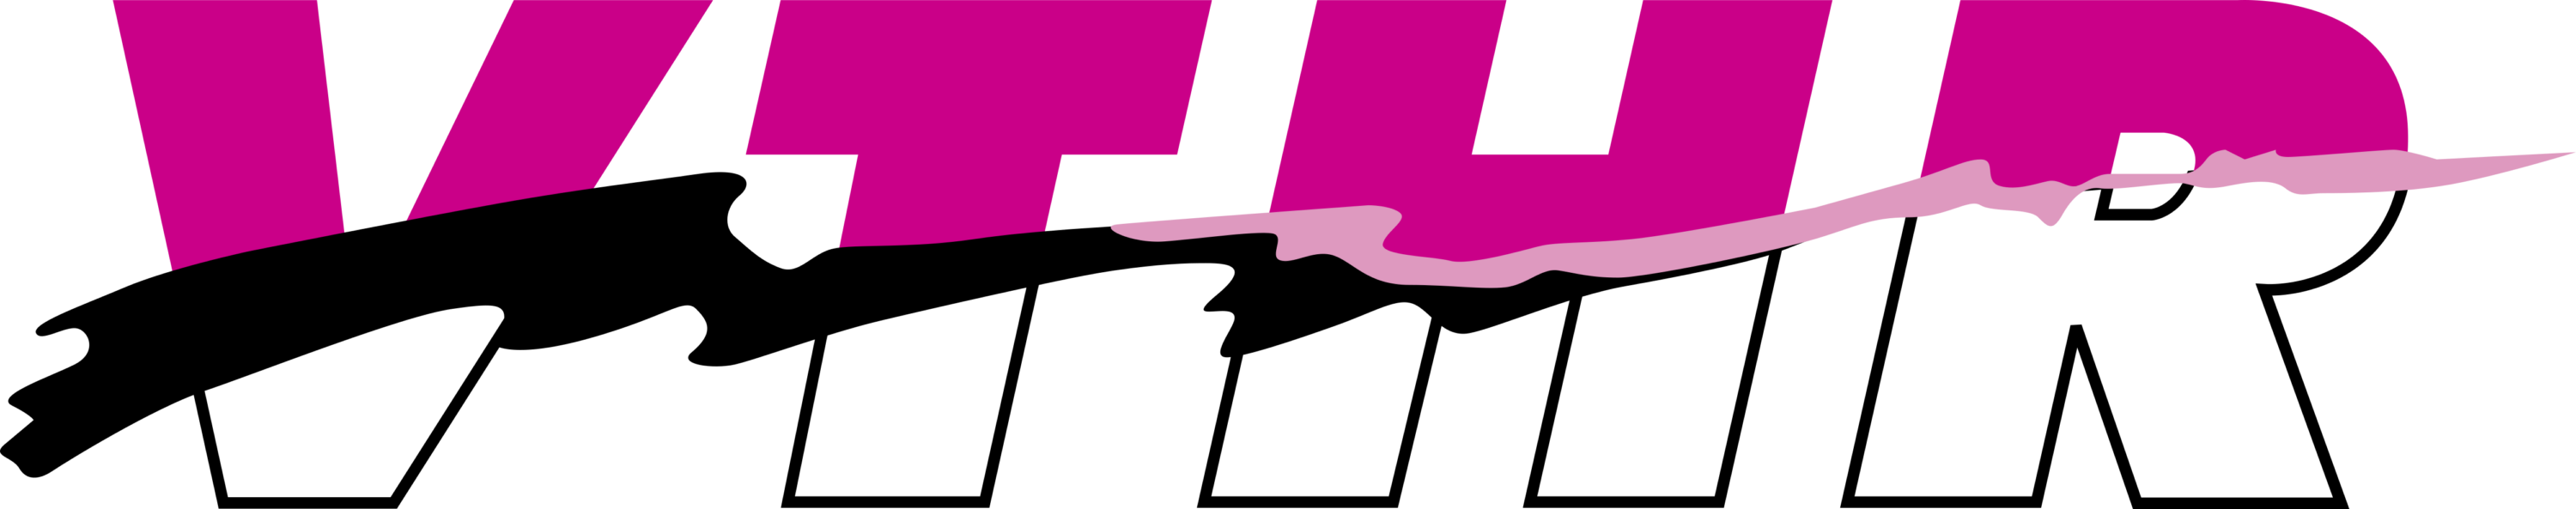 VTHR Logo